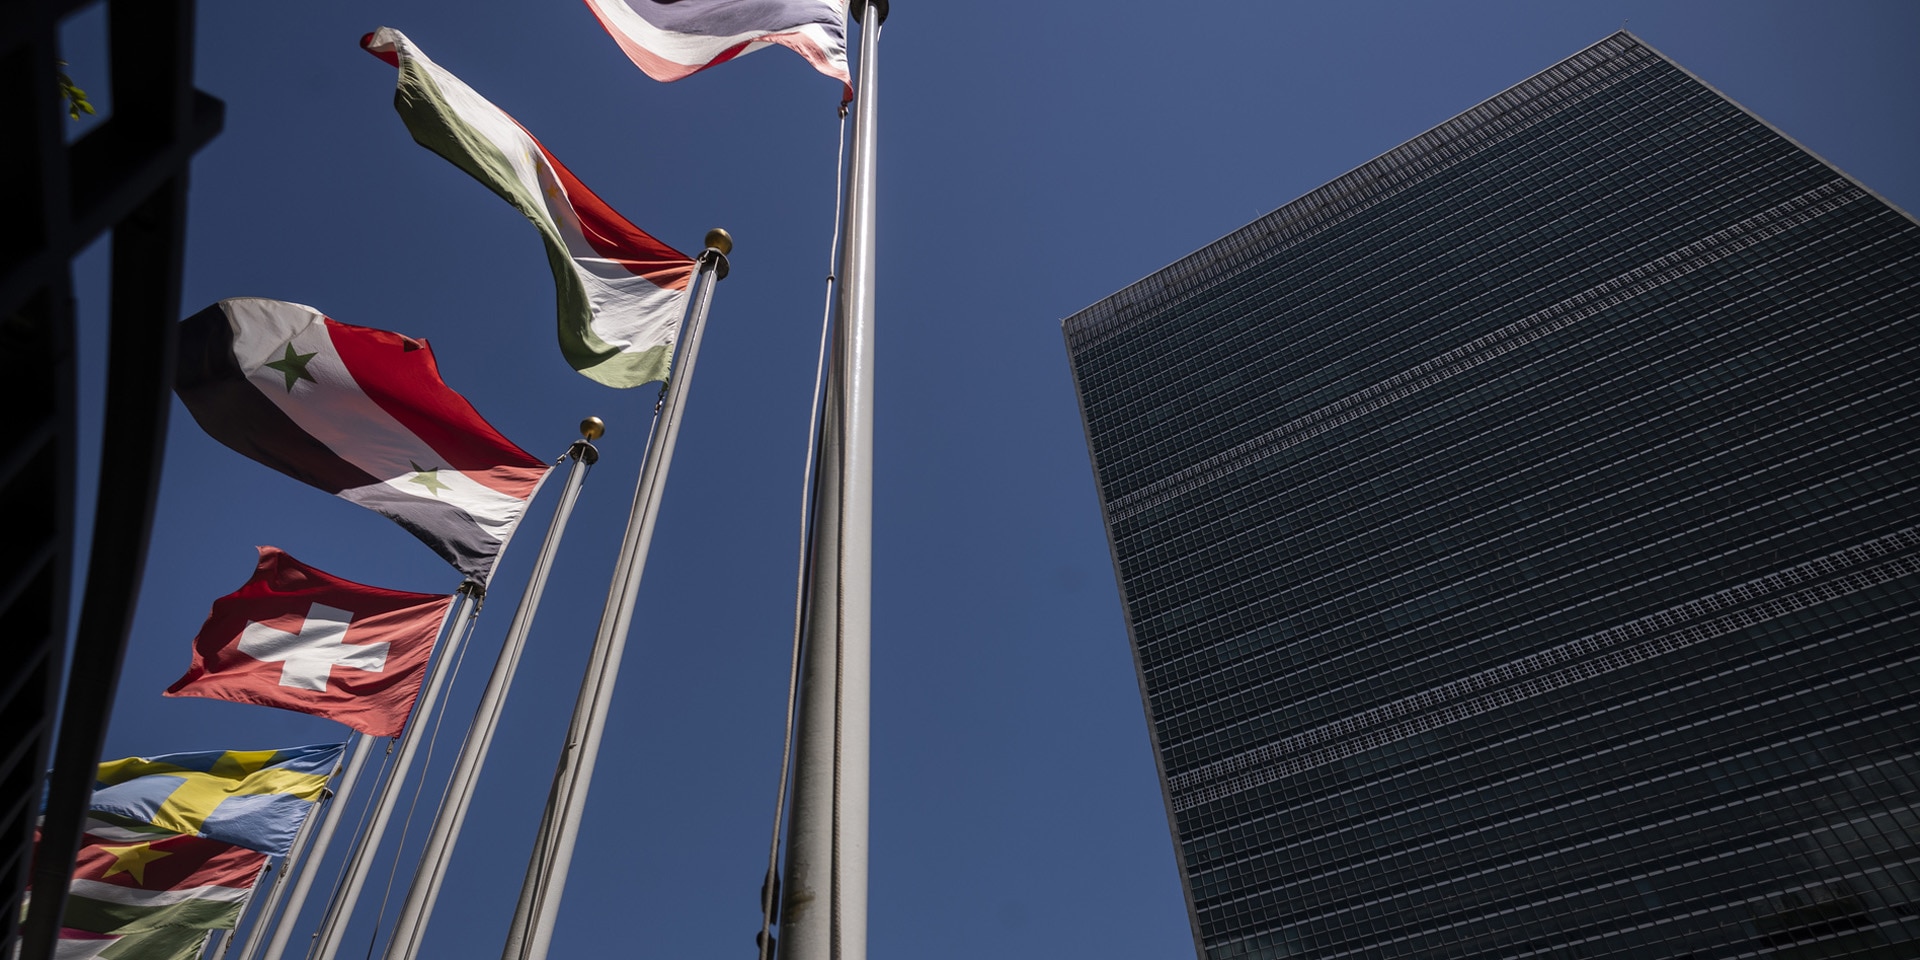 Le drapeau suisse flotte devant le bâtiment de l’ONU à New York, à côté des drapeaux des autres États membres.